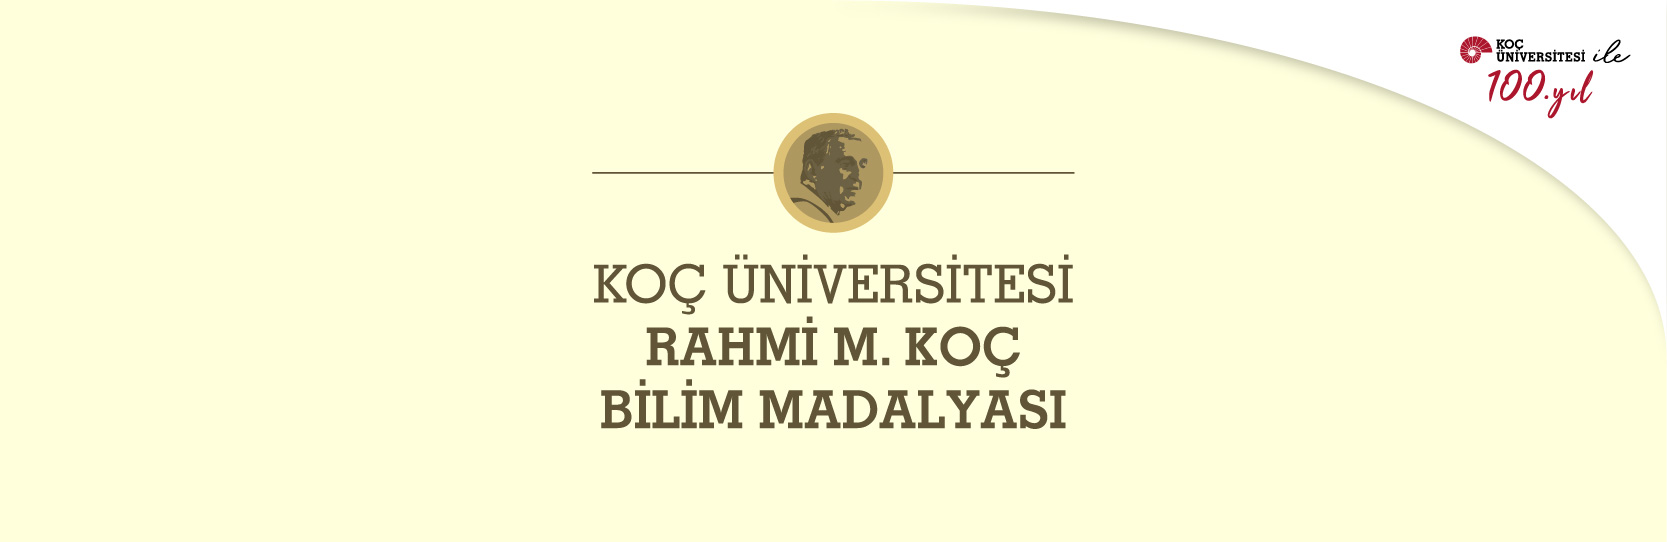 Koç Üniversitesi, Rahmi M. Koç Bilim Madalyası